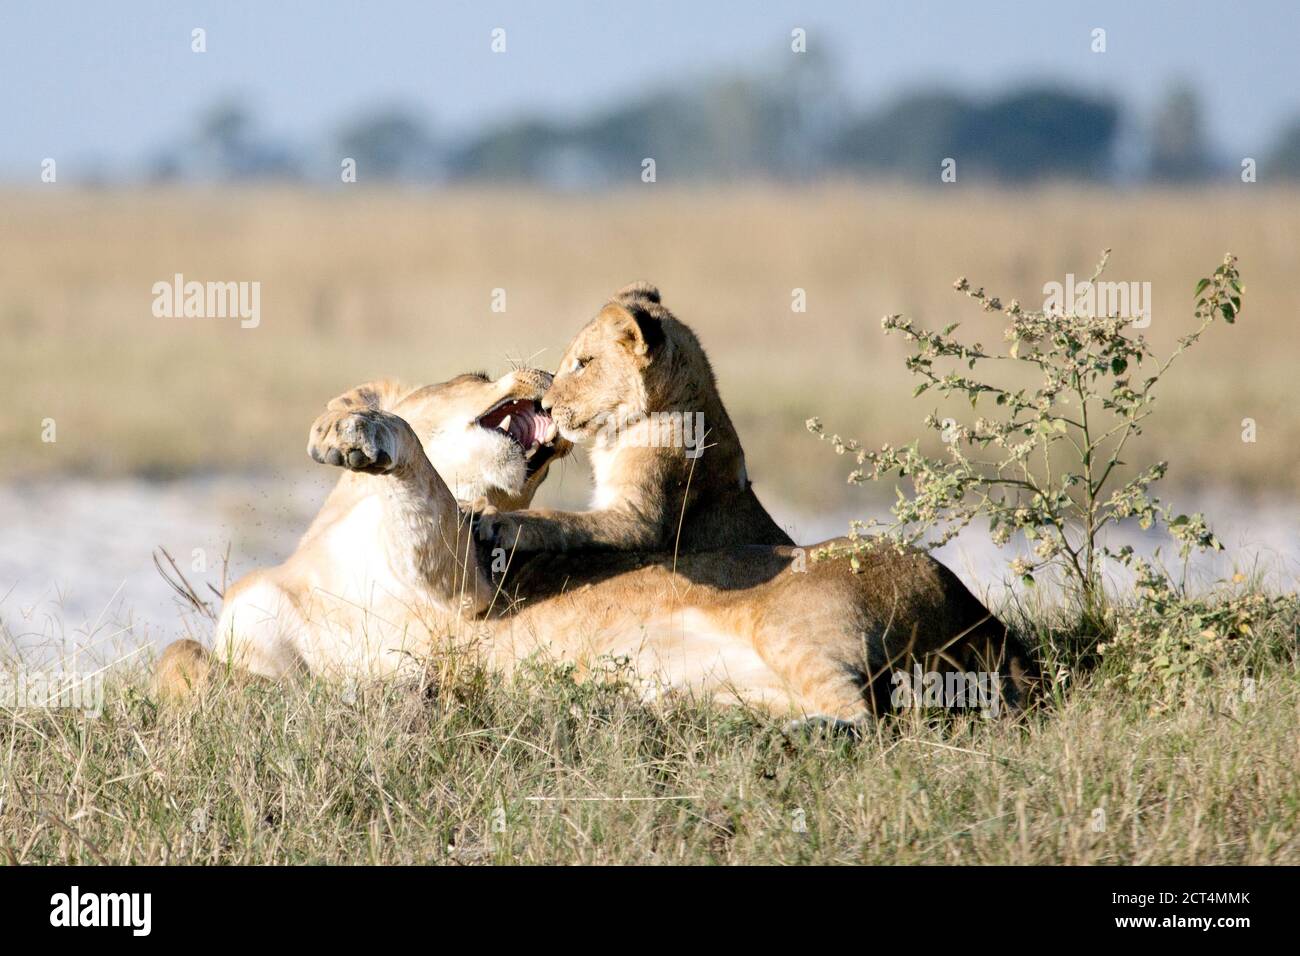 Une lionne joue avec son cub dans la lumière de l'après-midi. Banque D'Images